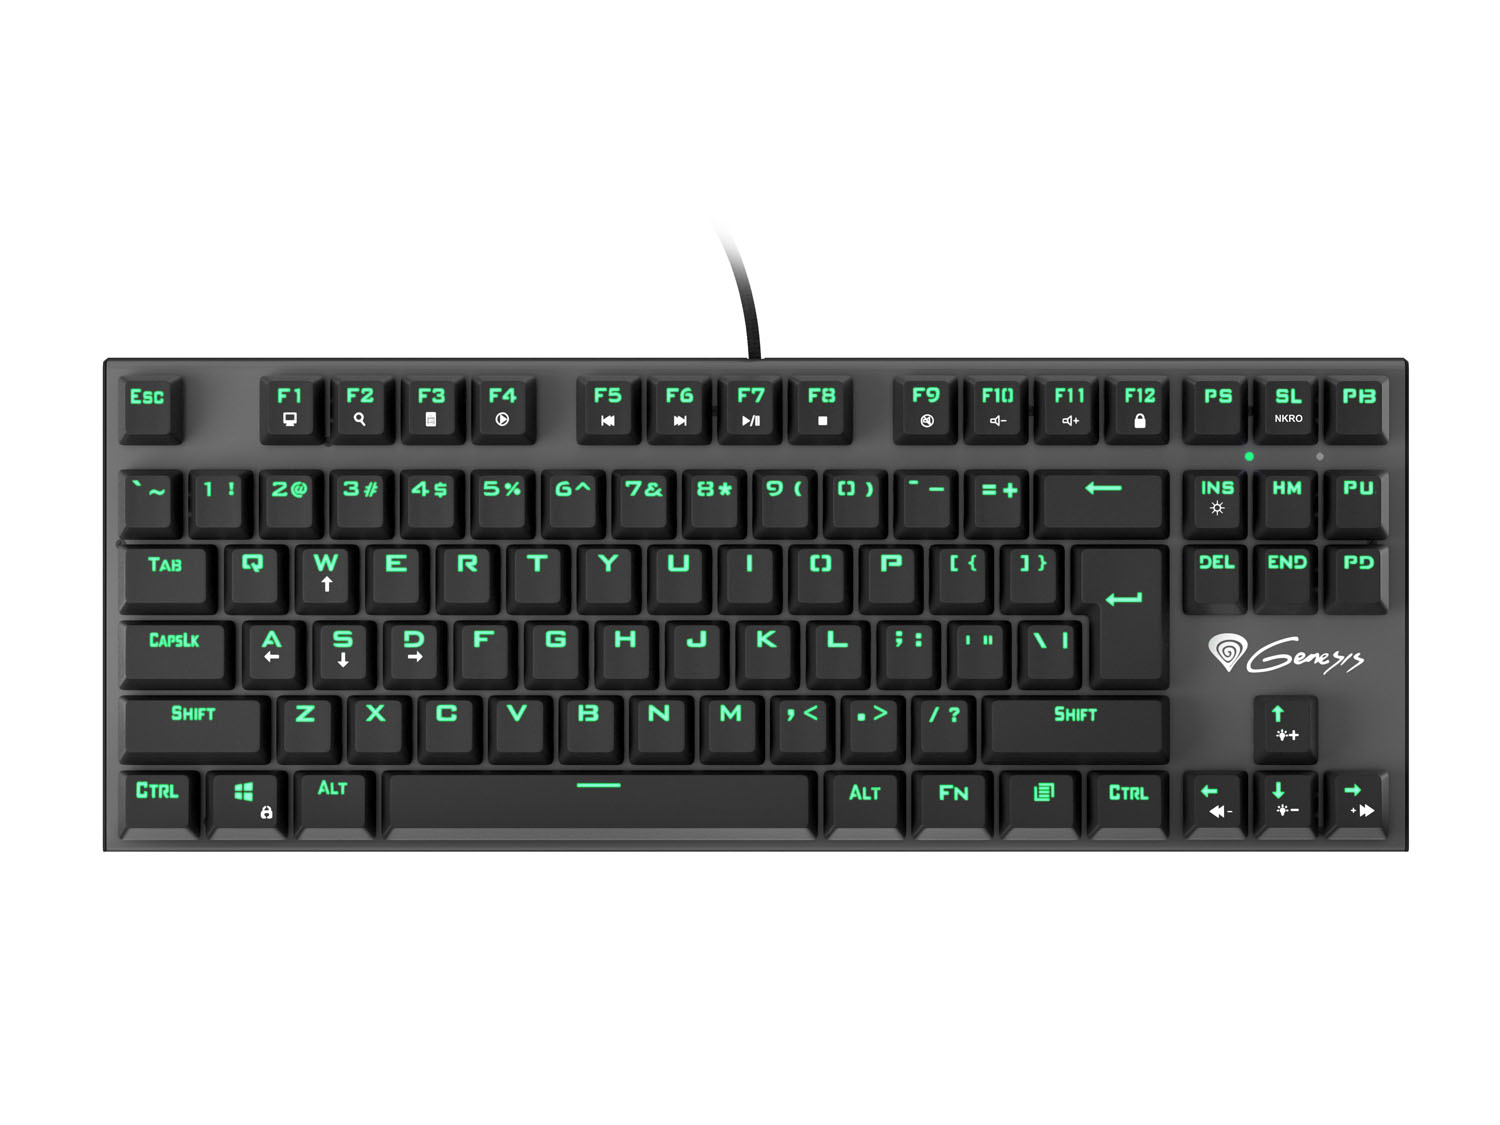 Genesis herní mechanická klávesnice THOR 300/Green light/Outemu Blue/Drátová USB/US layout/Černá